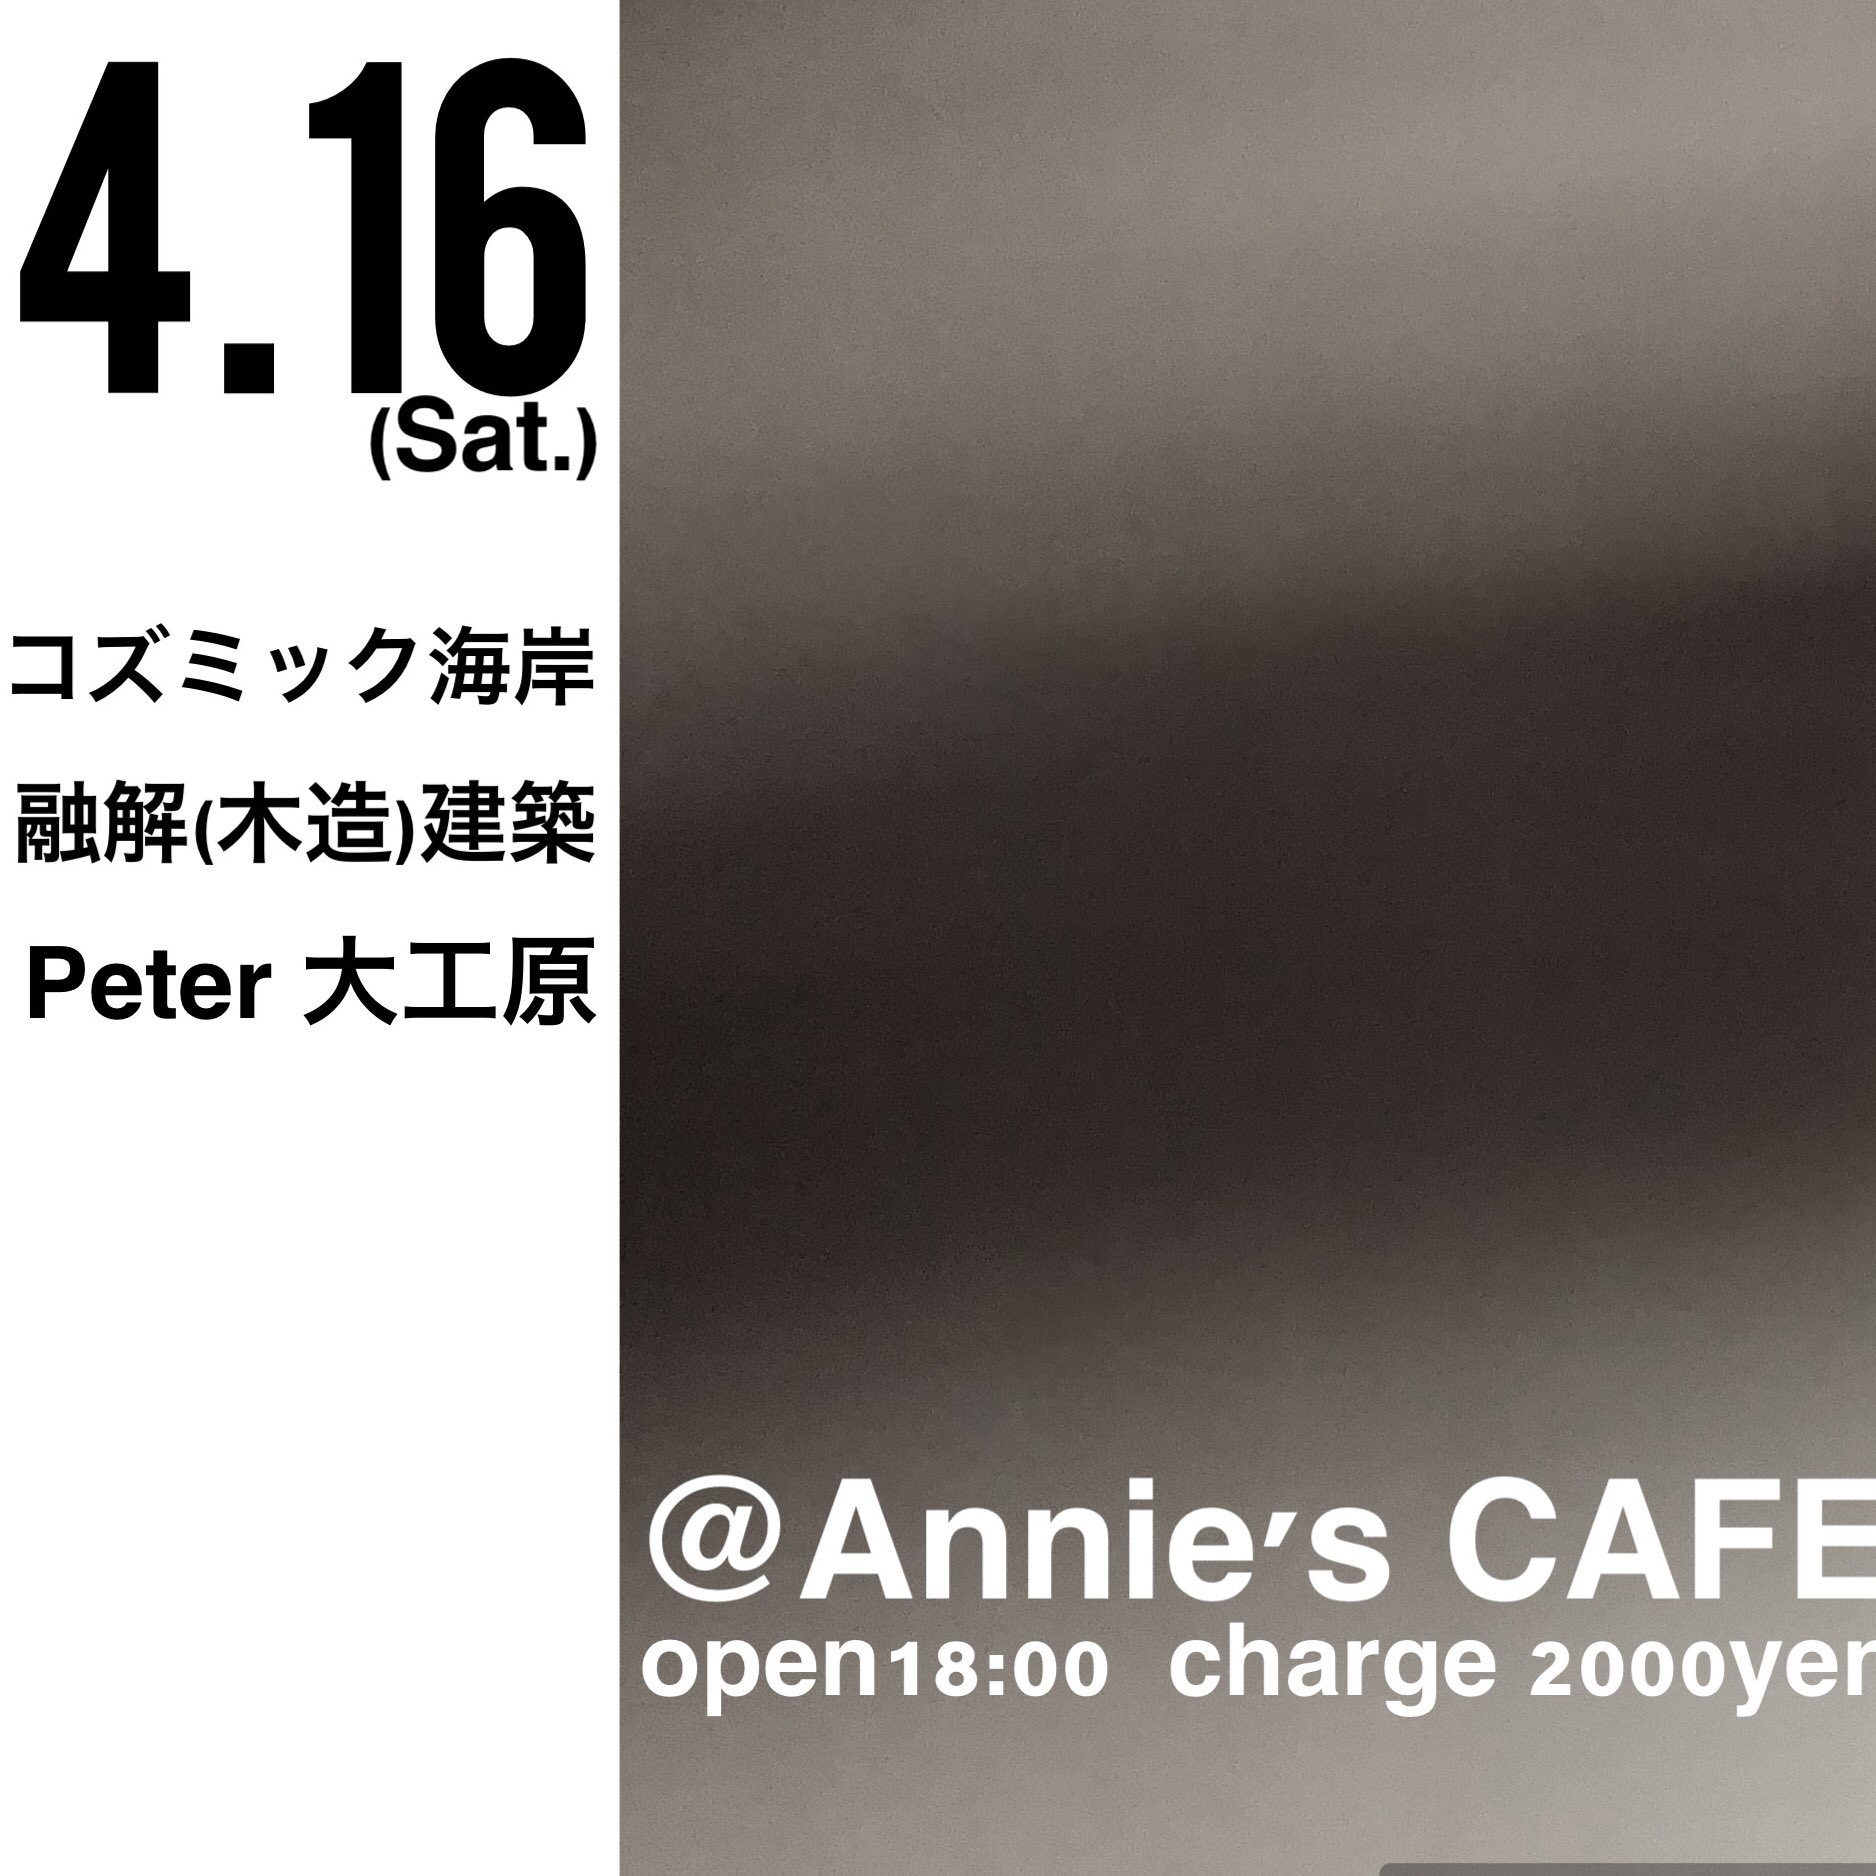 融解(木造)建築@Annie’s CAFE